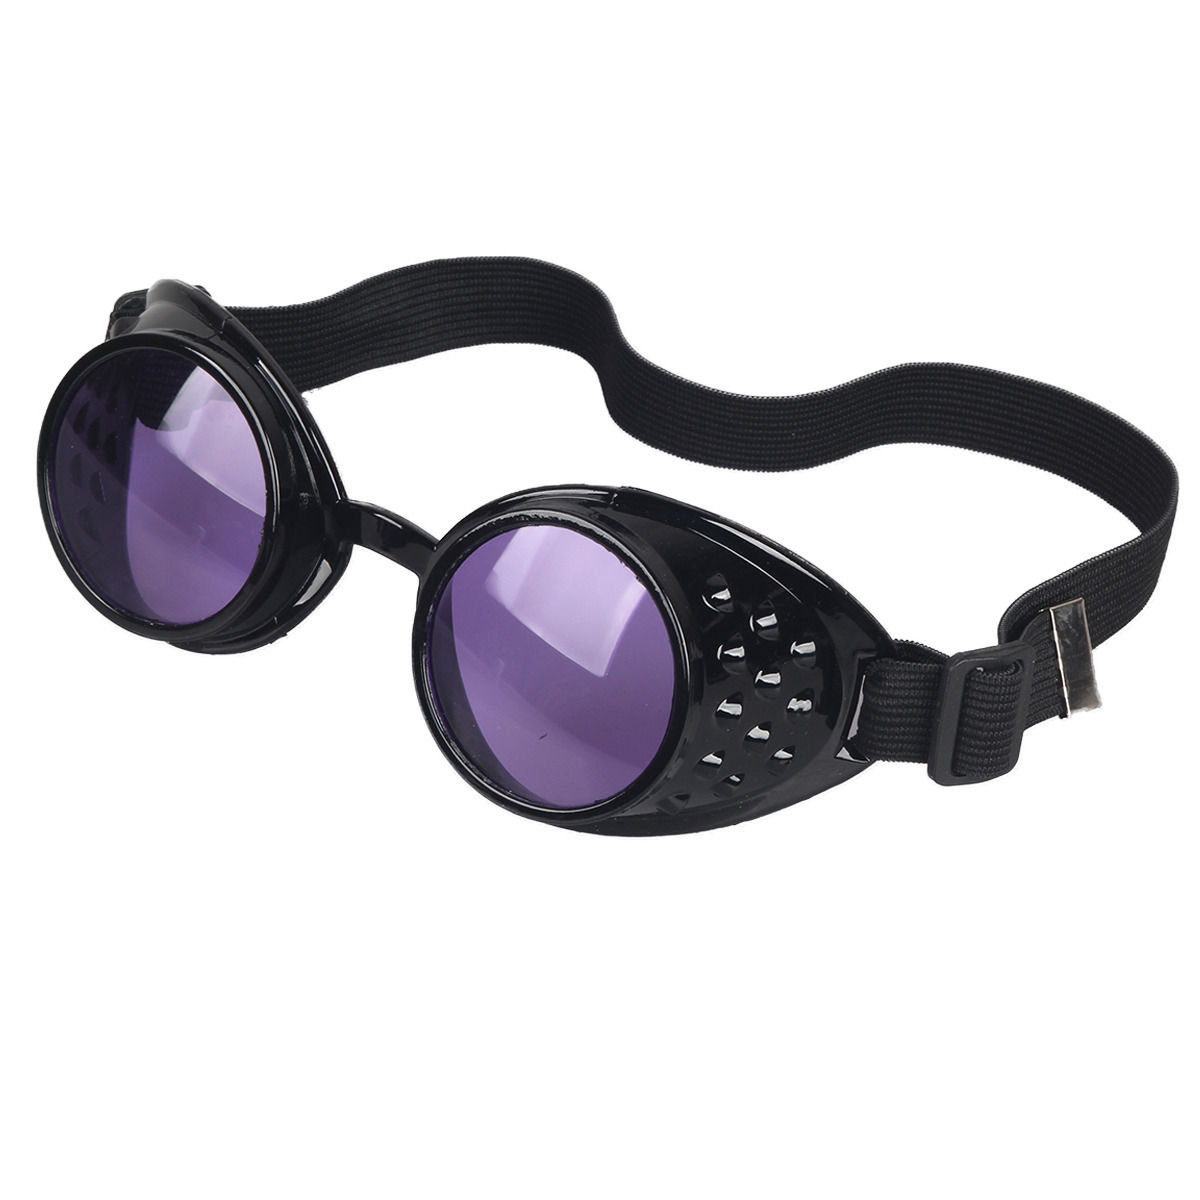 MFAZ Morefaz Ltd Cyber De Soleil des Lunettes de Soudage Welding Goggles LED Steampunk Antique Cosplay Sunglasses Round Glasses Party Fancy Dress Design 1 Gold 